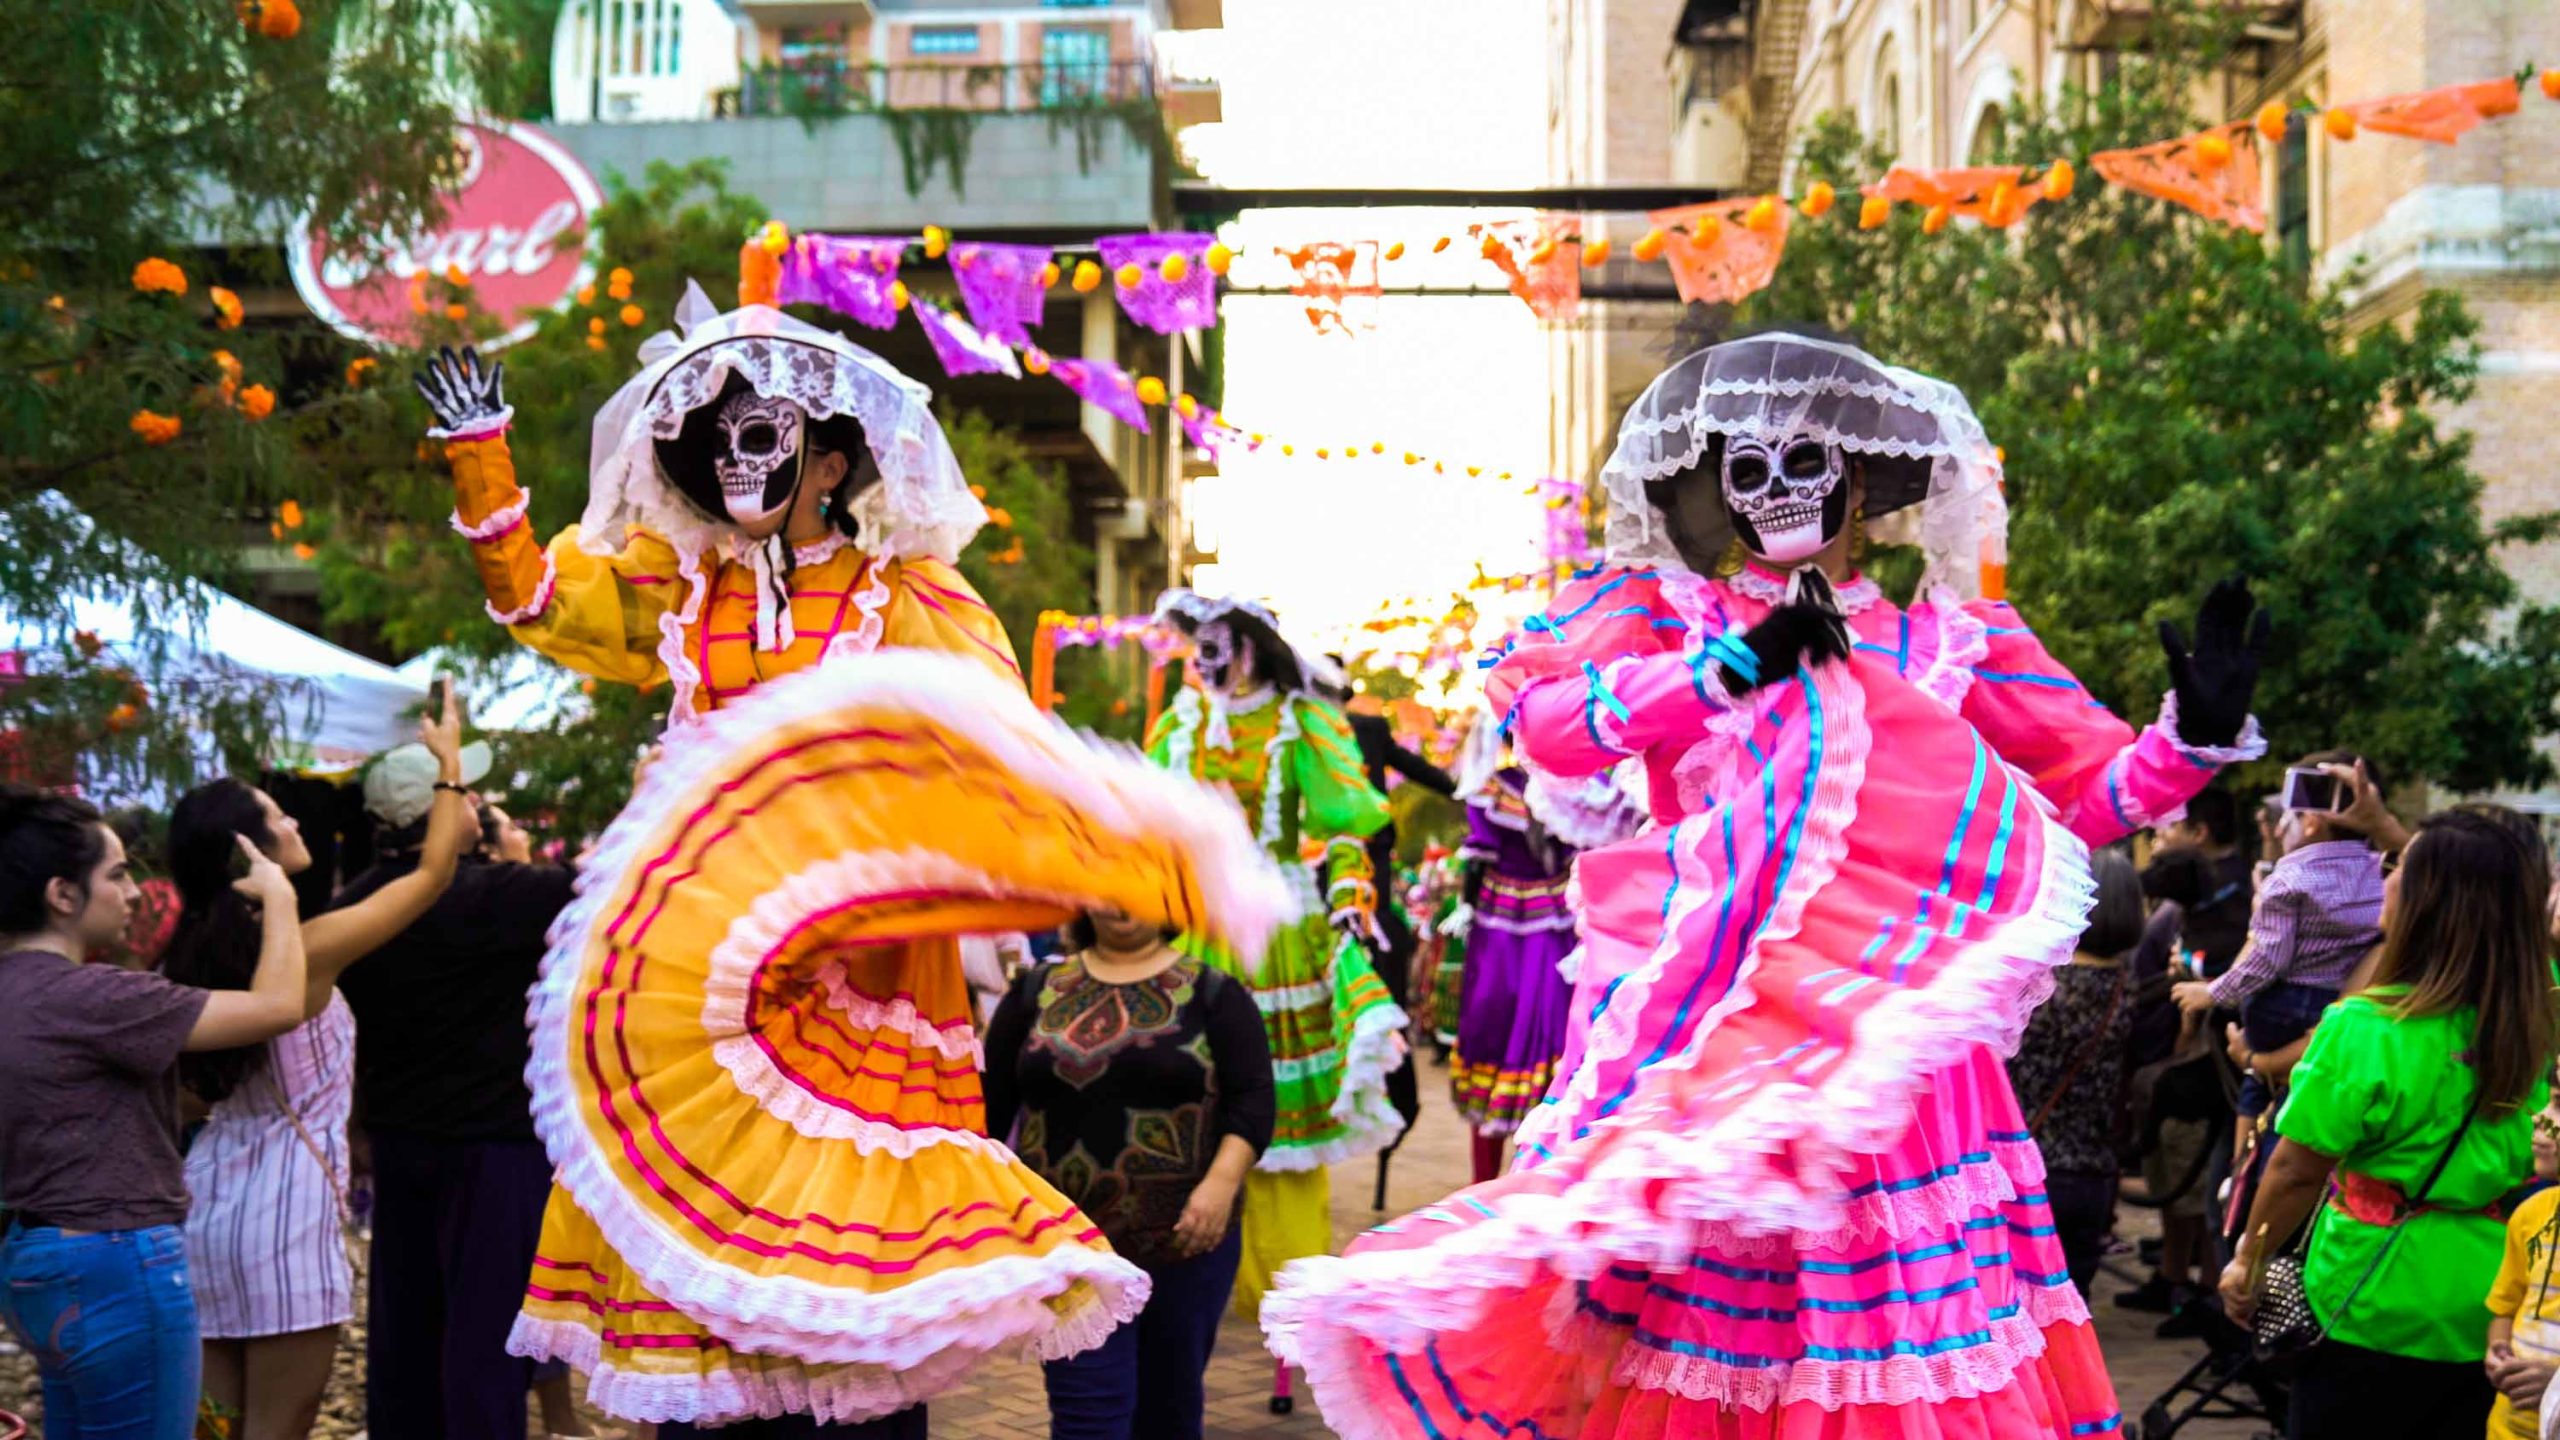 Cultures converge at San Antonio's Día de Los Muertos festival